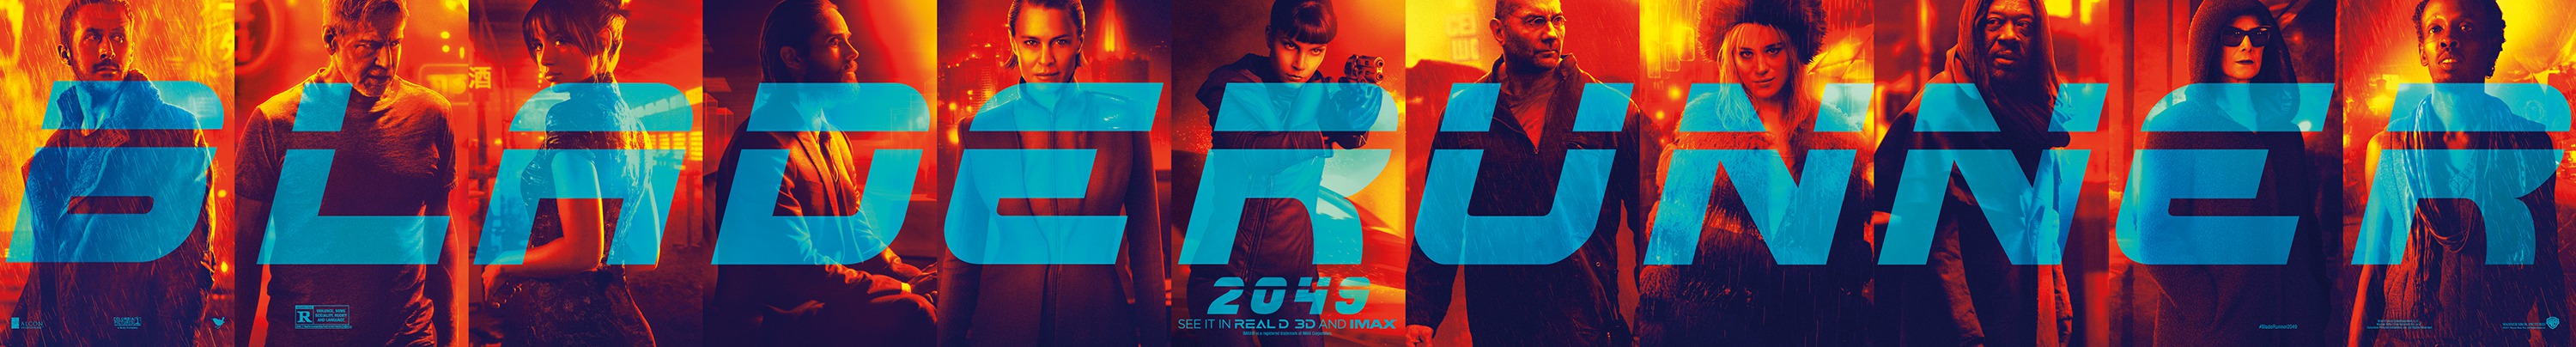 Mega Sized Movie Poster Image for Blade Runner 2049 (#26 of 32)